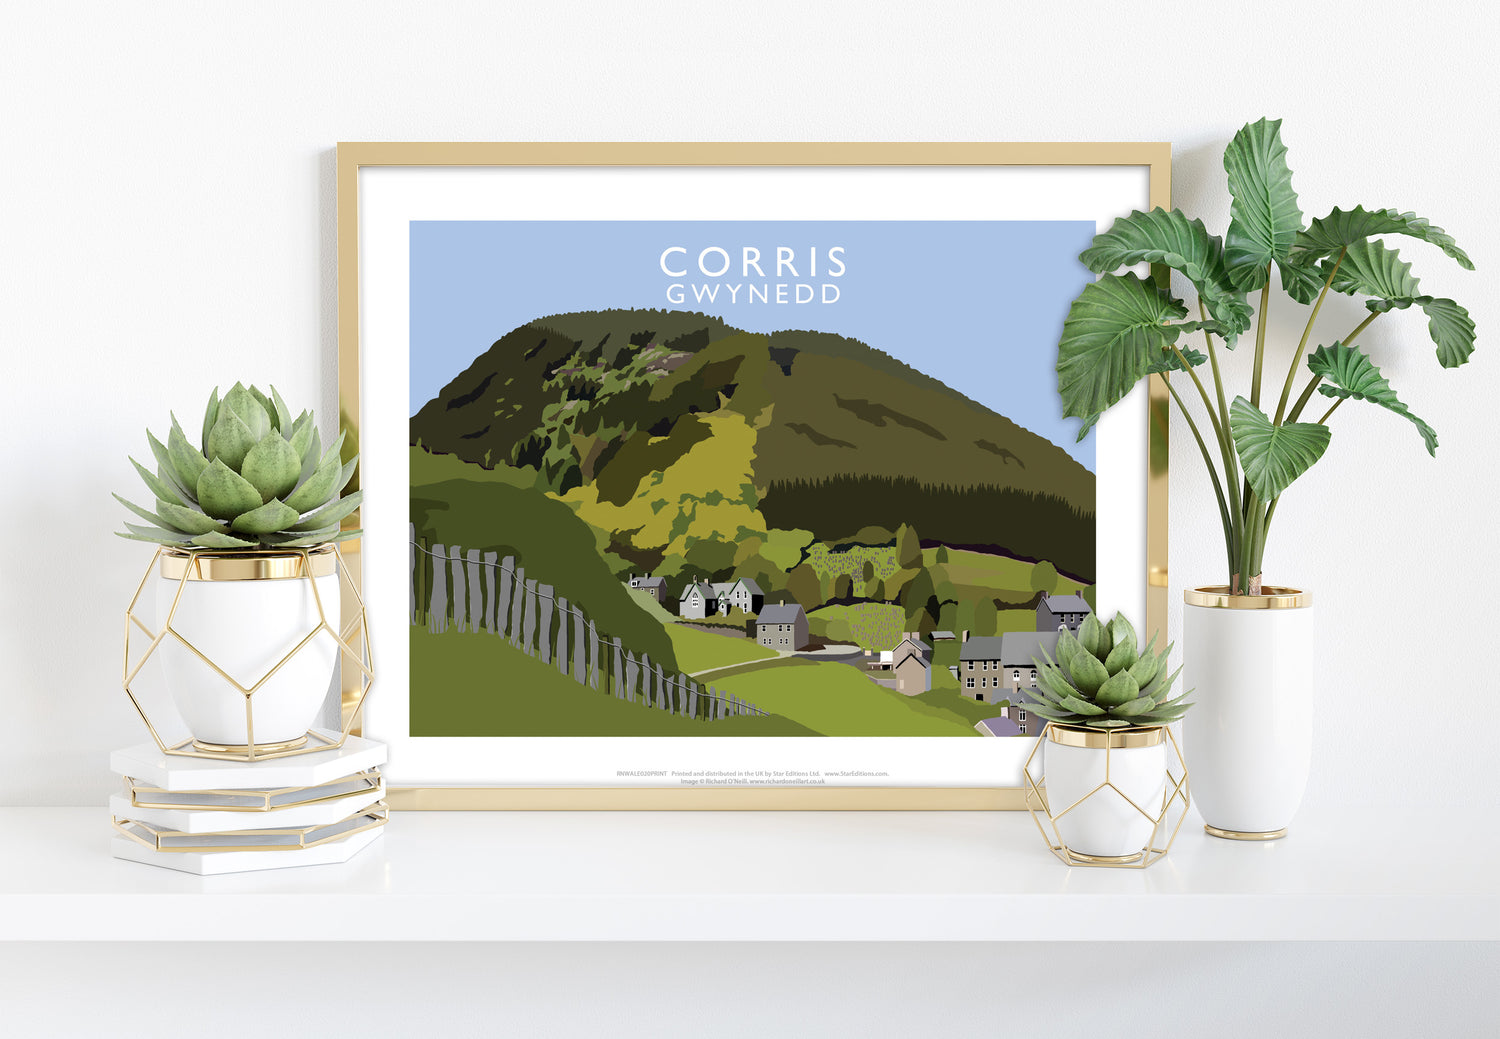 Corris, Gwynedd, Wales - Art Print